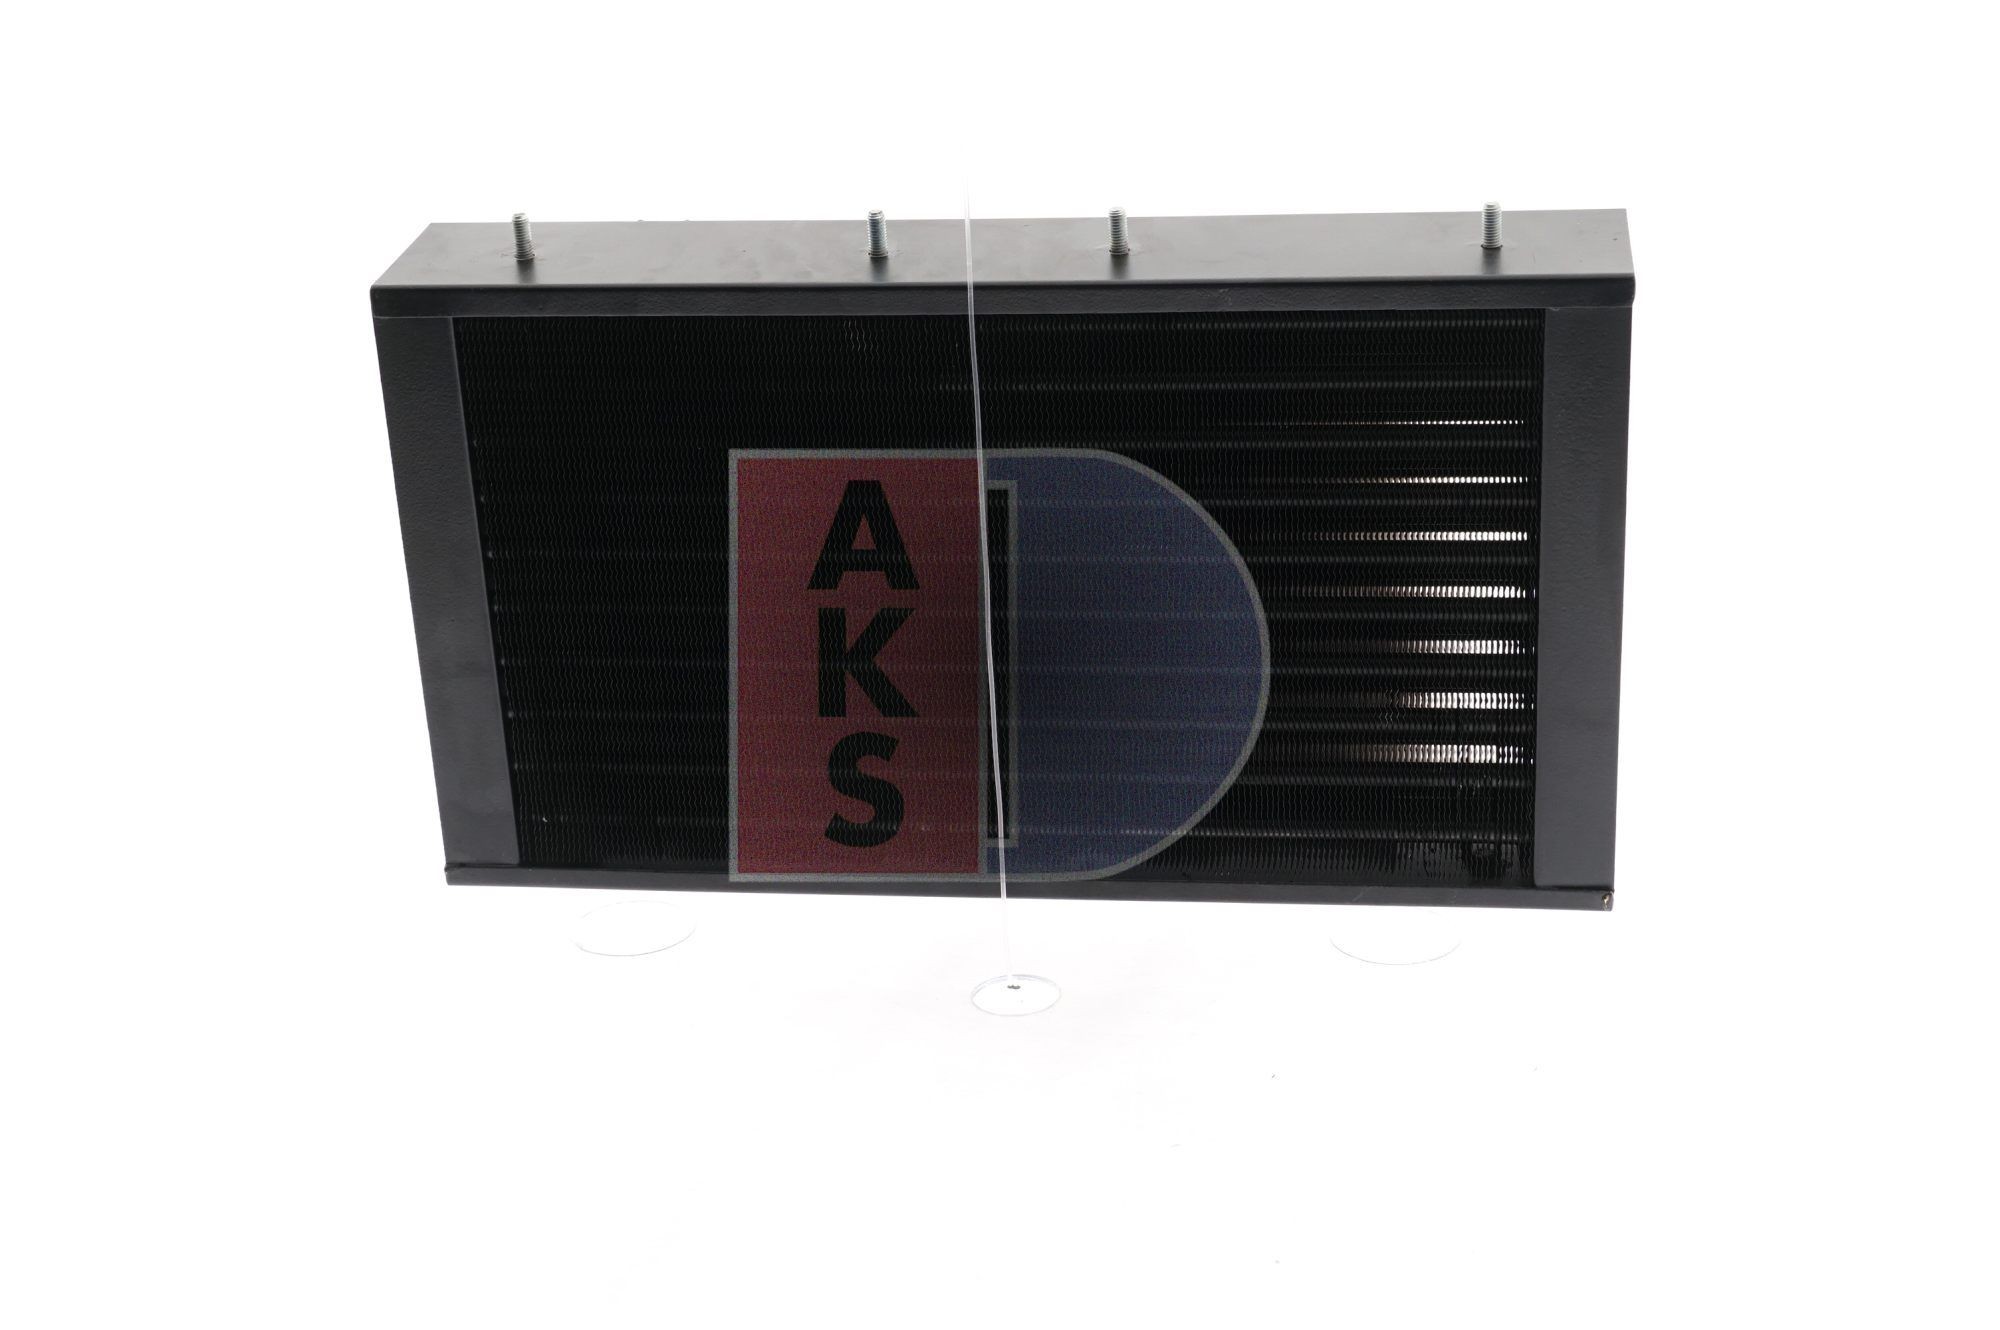 AKS DASIS Air con condenser 422021N